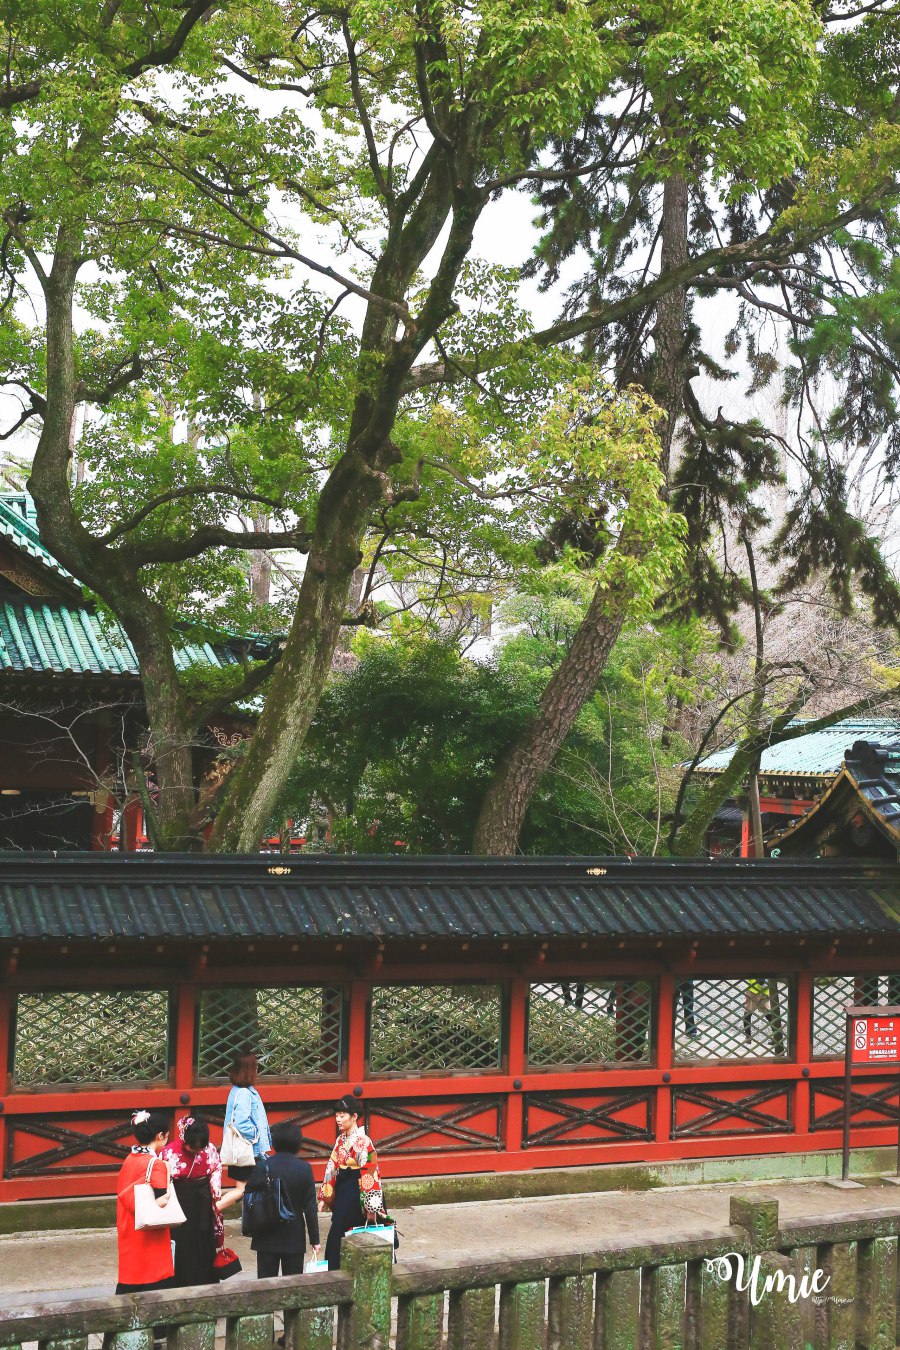 跟著日本在地觀光導遊FELLOW TRIP一起深度玩日本! 東京谷中銀座|根津神社|千駄木日本和菓子教室初體驗